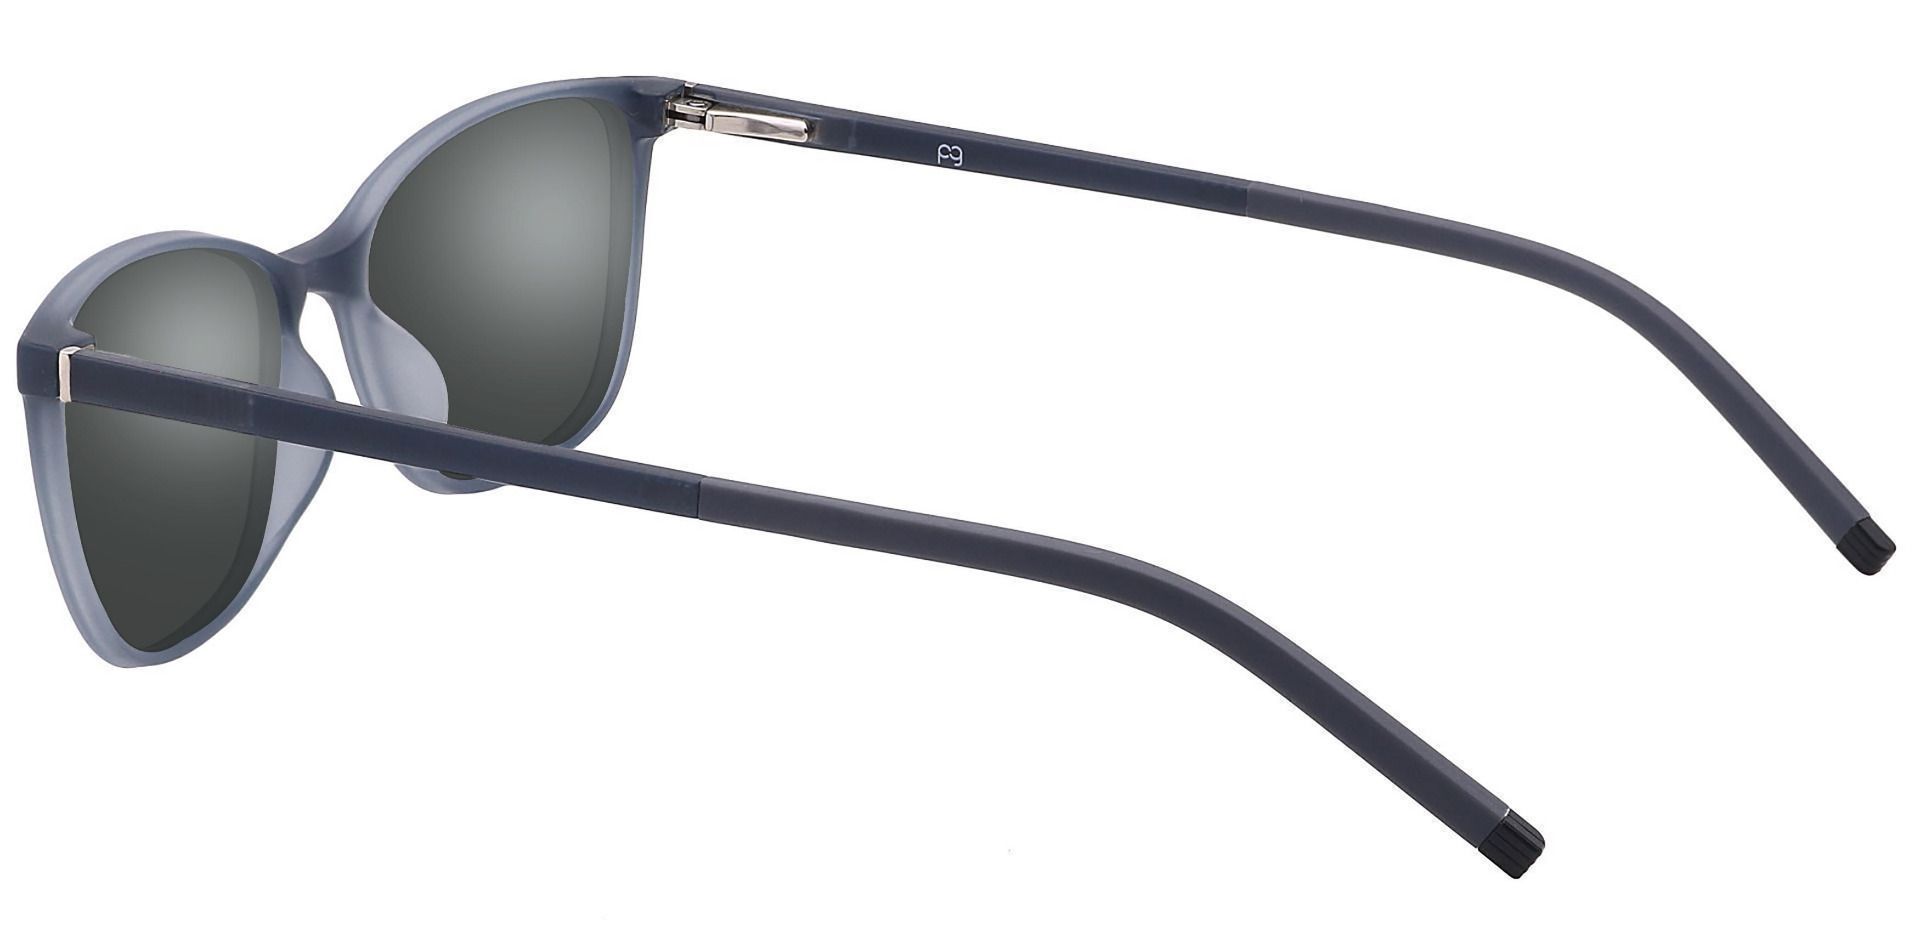 Danica Square Prescription Sunglasses - Gray Frame With Gray Lenses